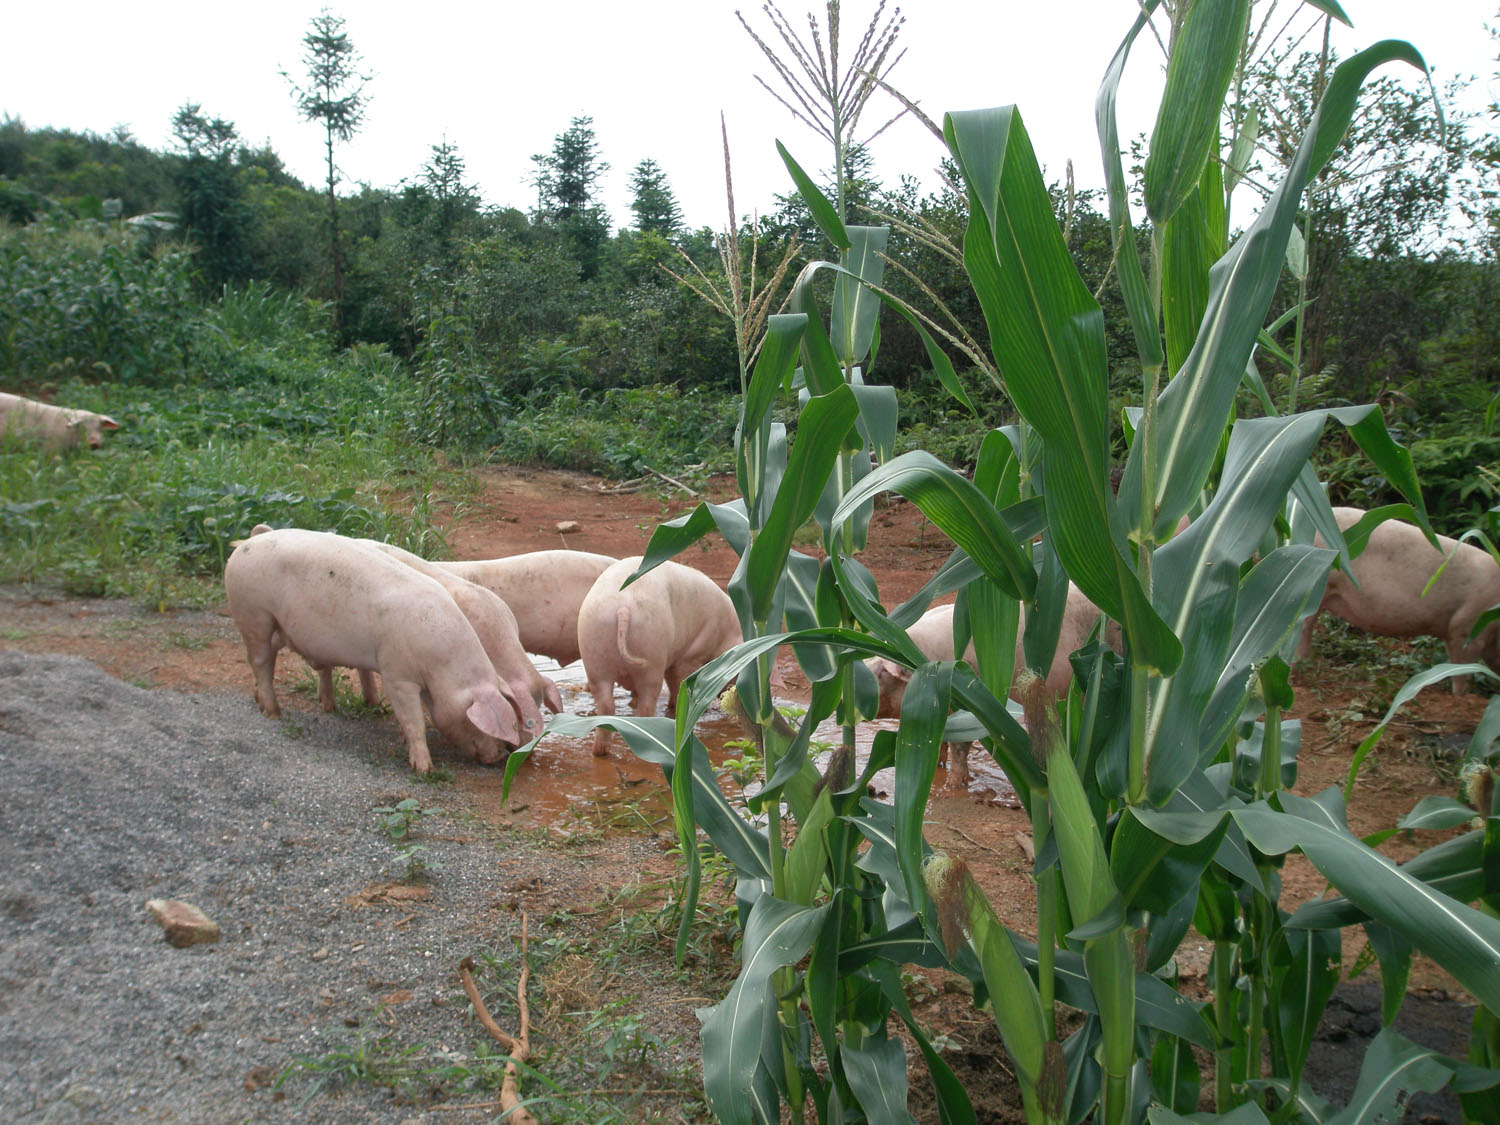 原生态放养式本地土猪出售 - 牲畜 - 桂林分类信息 桂林二手市场